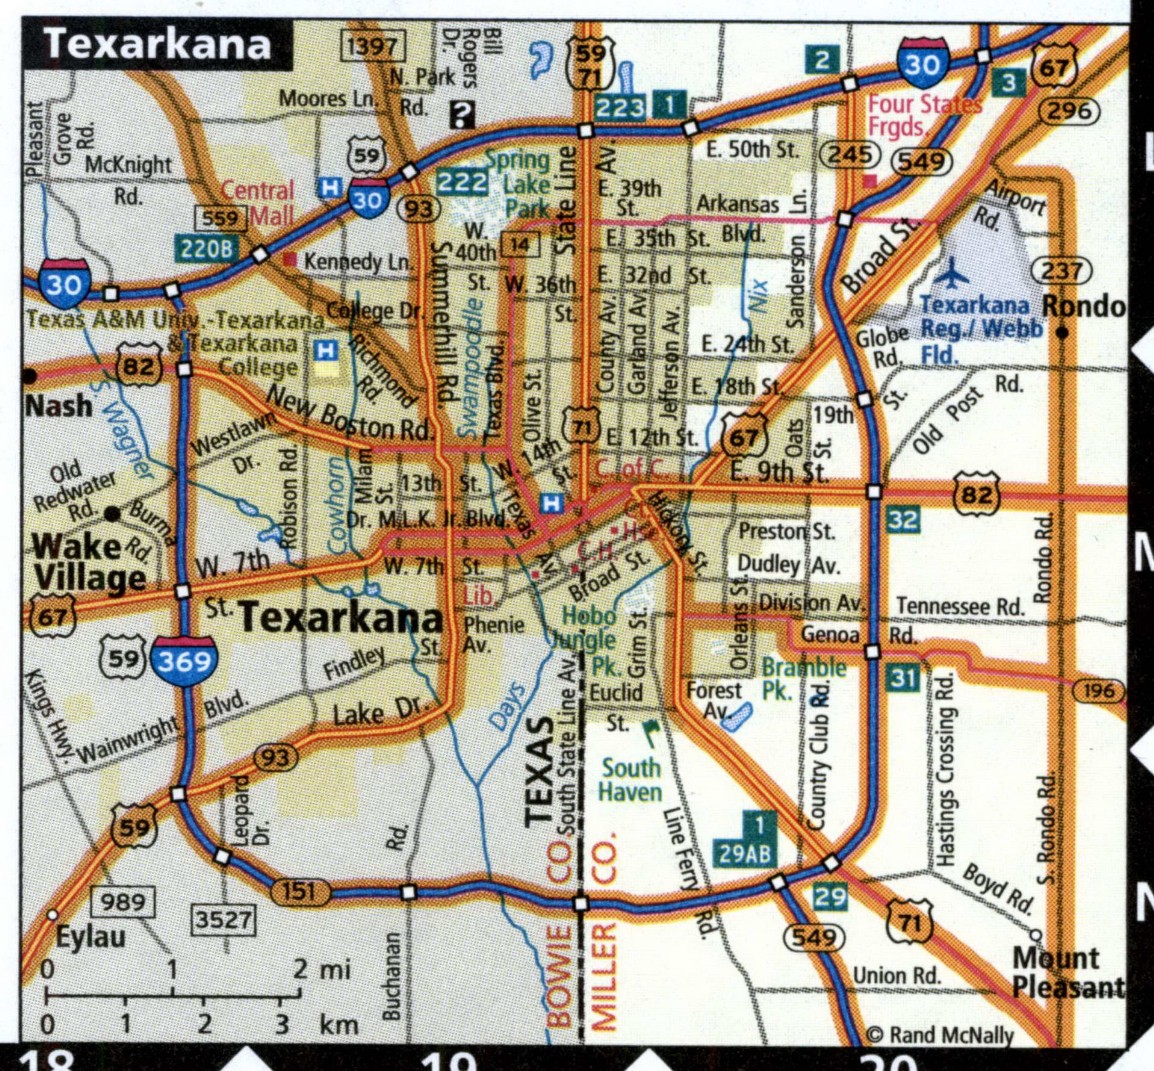 Texarkana map for truckers